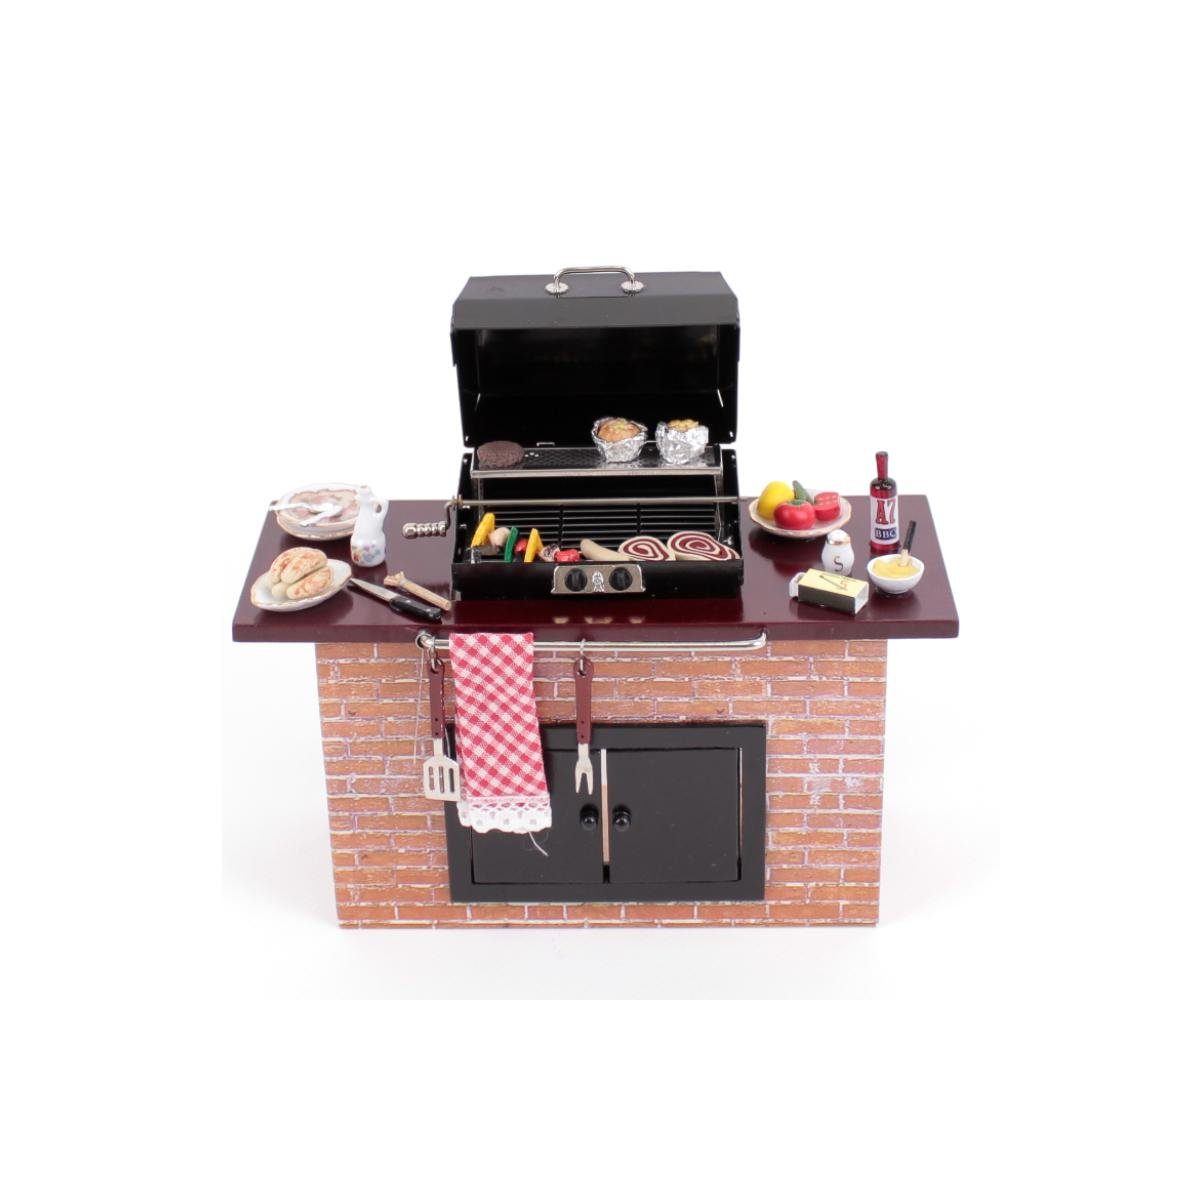 Reutter Miniatur Dekofigur Barbecuegrill, - 001.712/2 dekoriert, Porzellan